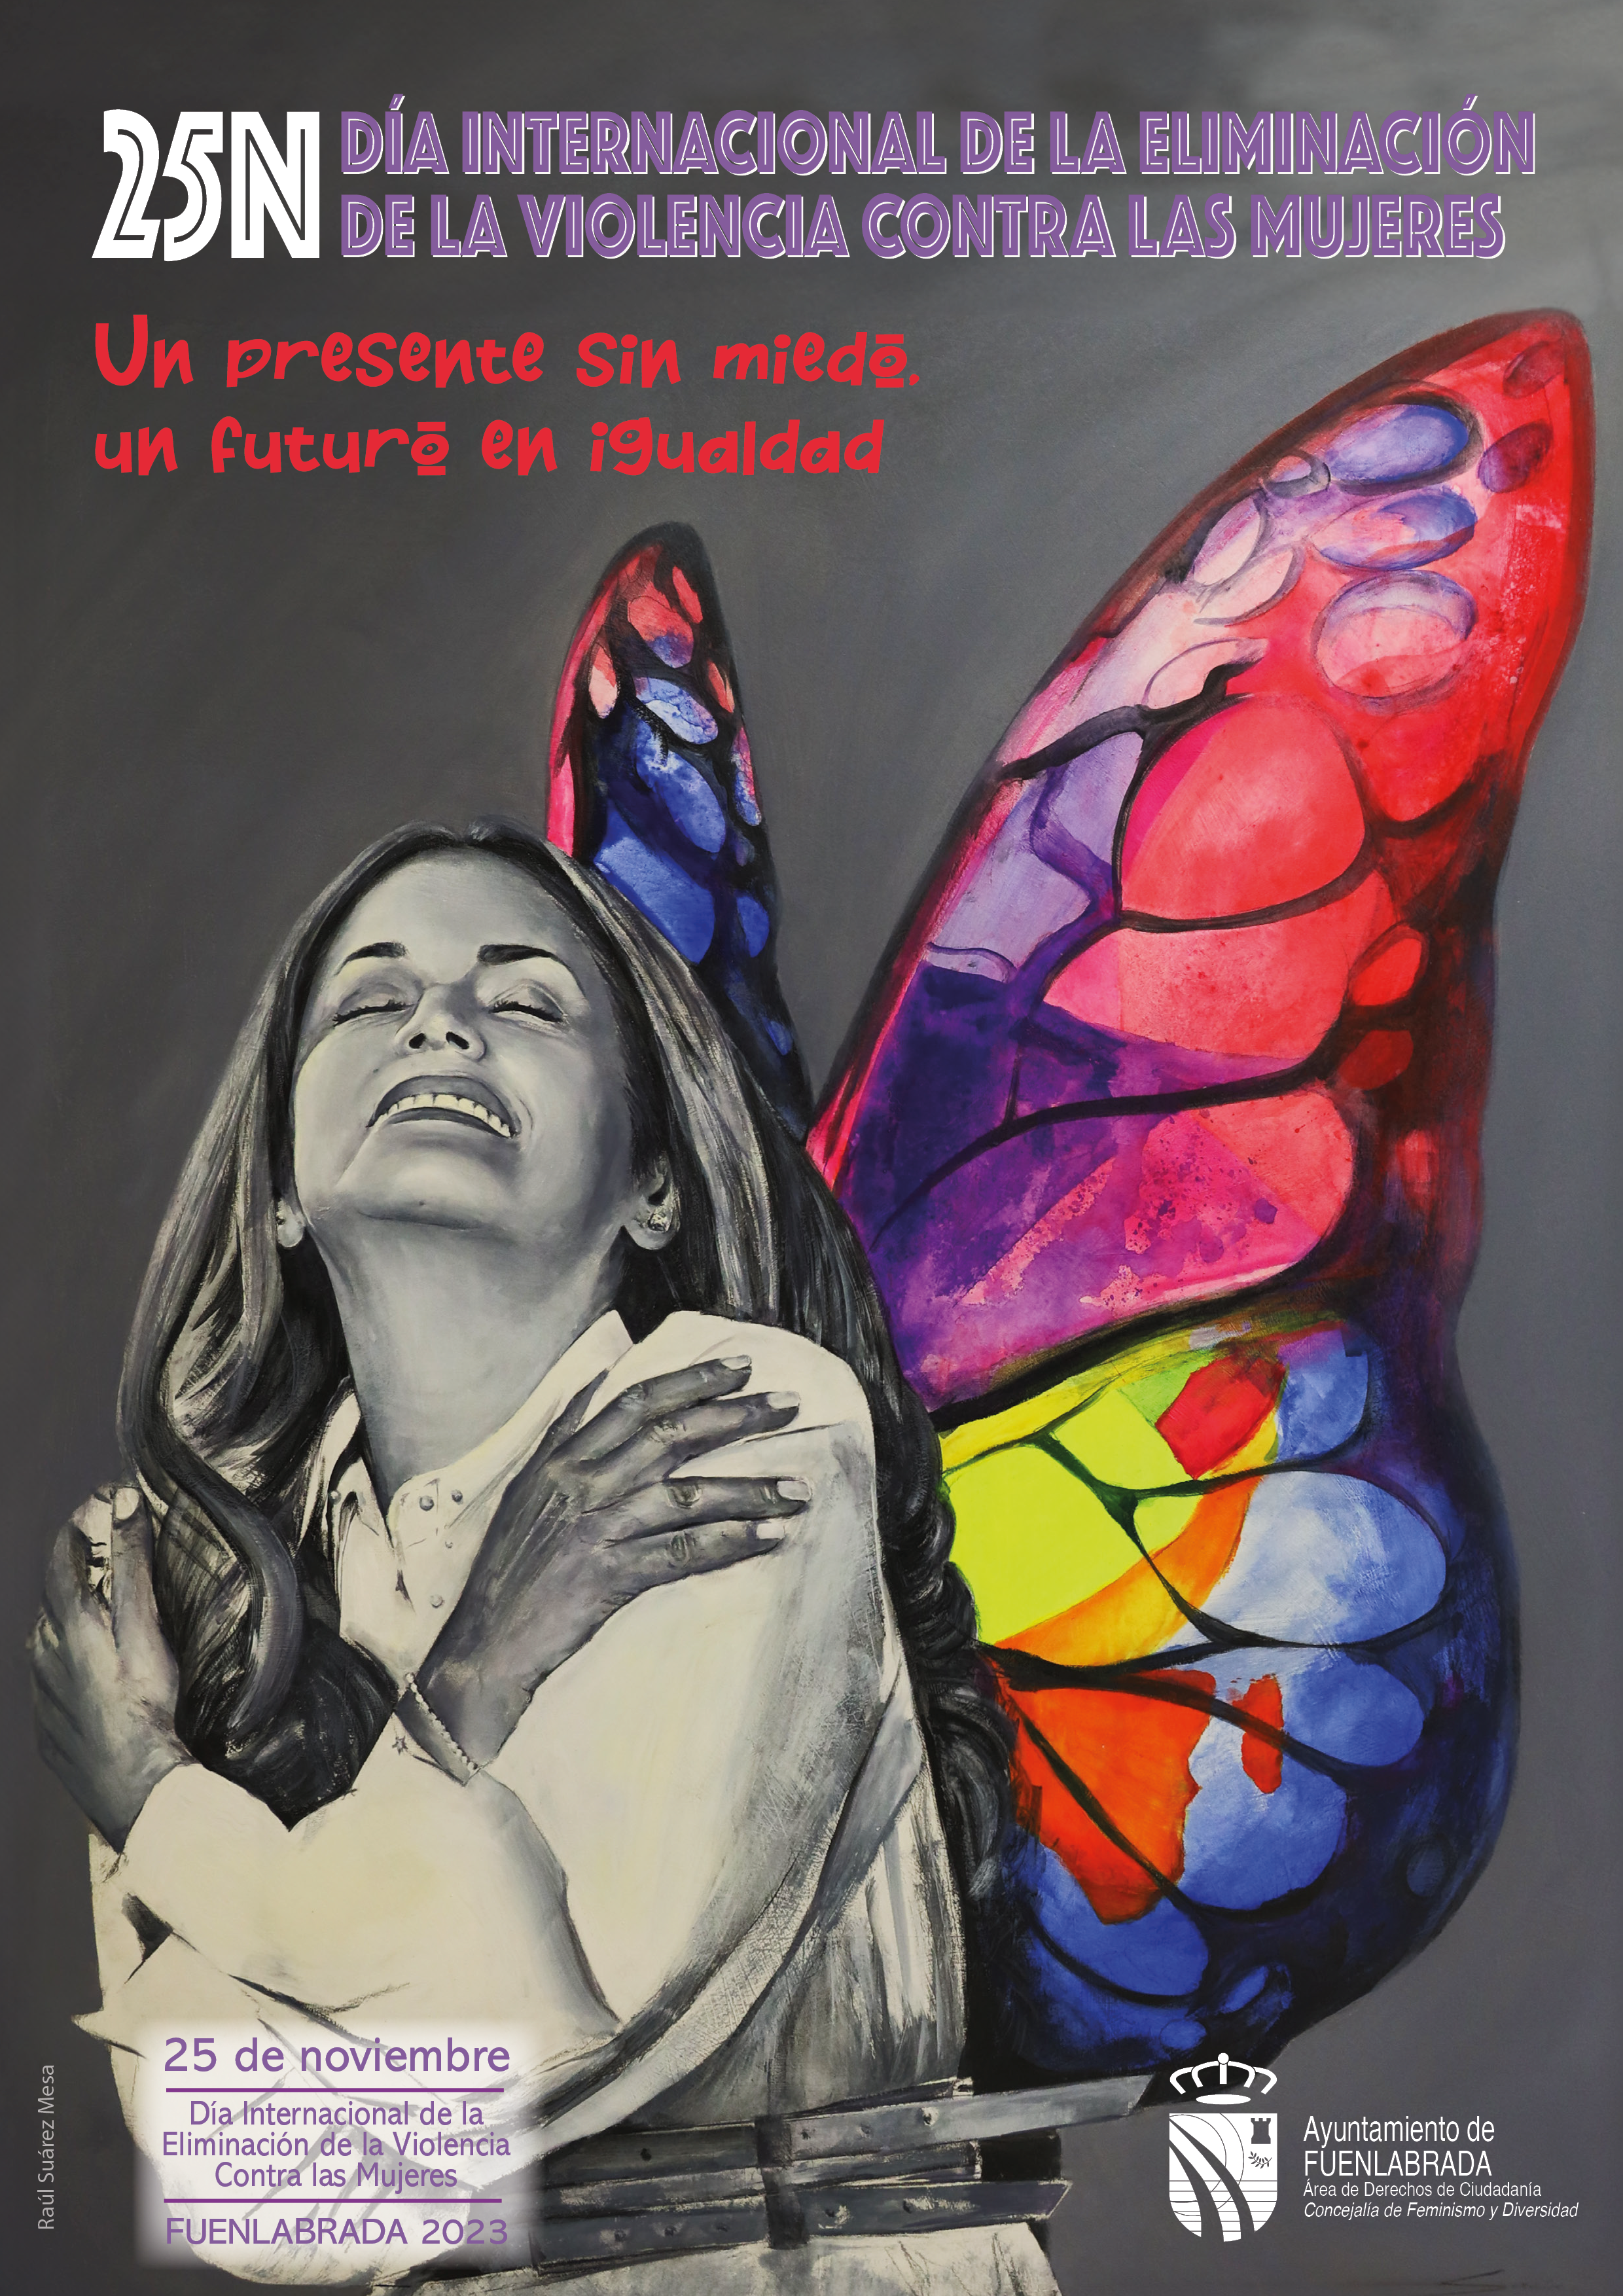 Durante noviembre, Fuenlabrada se sumerge en un programa morado de actividades, marchas nocturnas y edificios iluminados en solidaridad con el 25-N, reafirmando su compromiso contra la violencia de género.